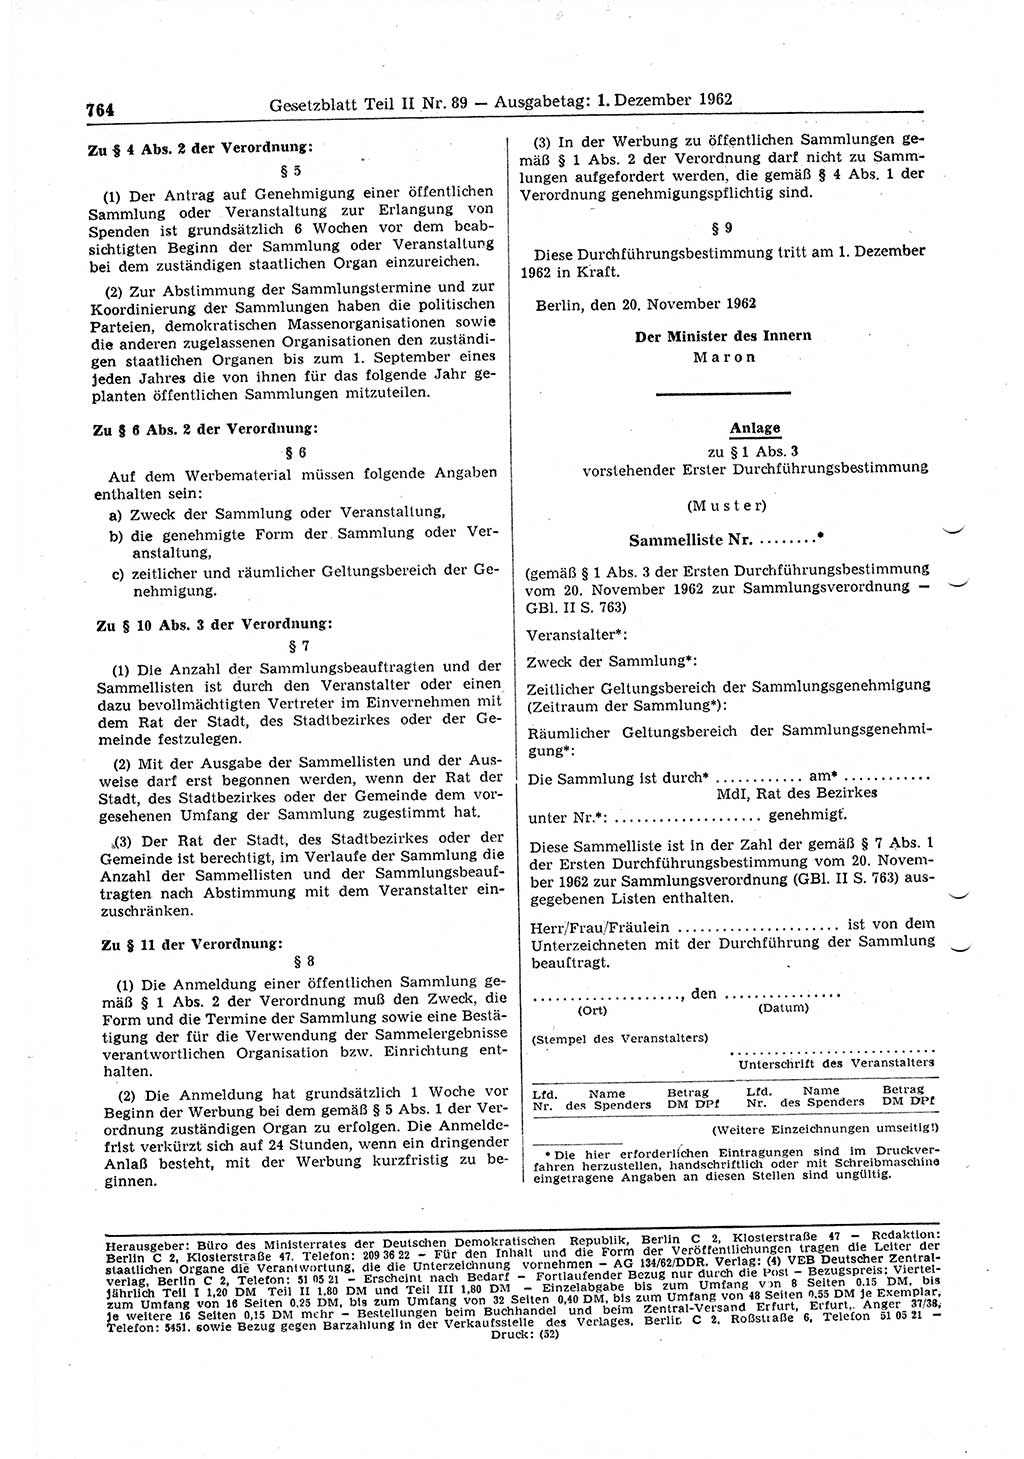 Gesetzblatt (GBl.) der Deutschen Demokratischen Republik (DDR) Teil ⅠⅠ 1962, Seite 764 (GBl. DDR ⅠⅠ 1962, S. 764)